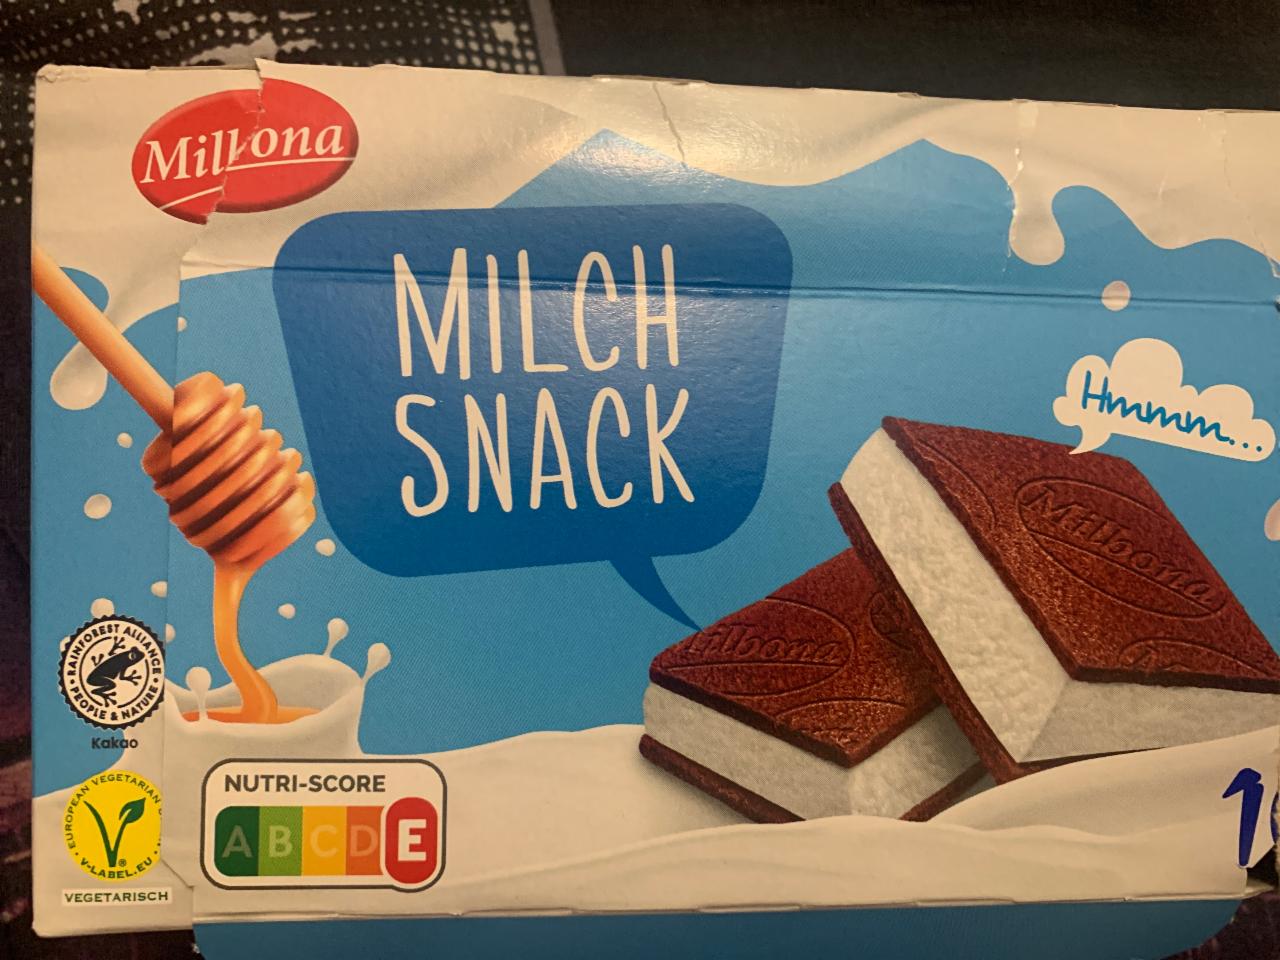 Fotografie - Milk snack Milbona